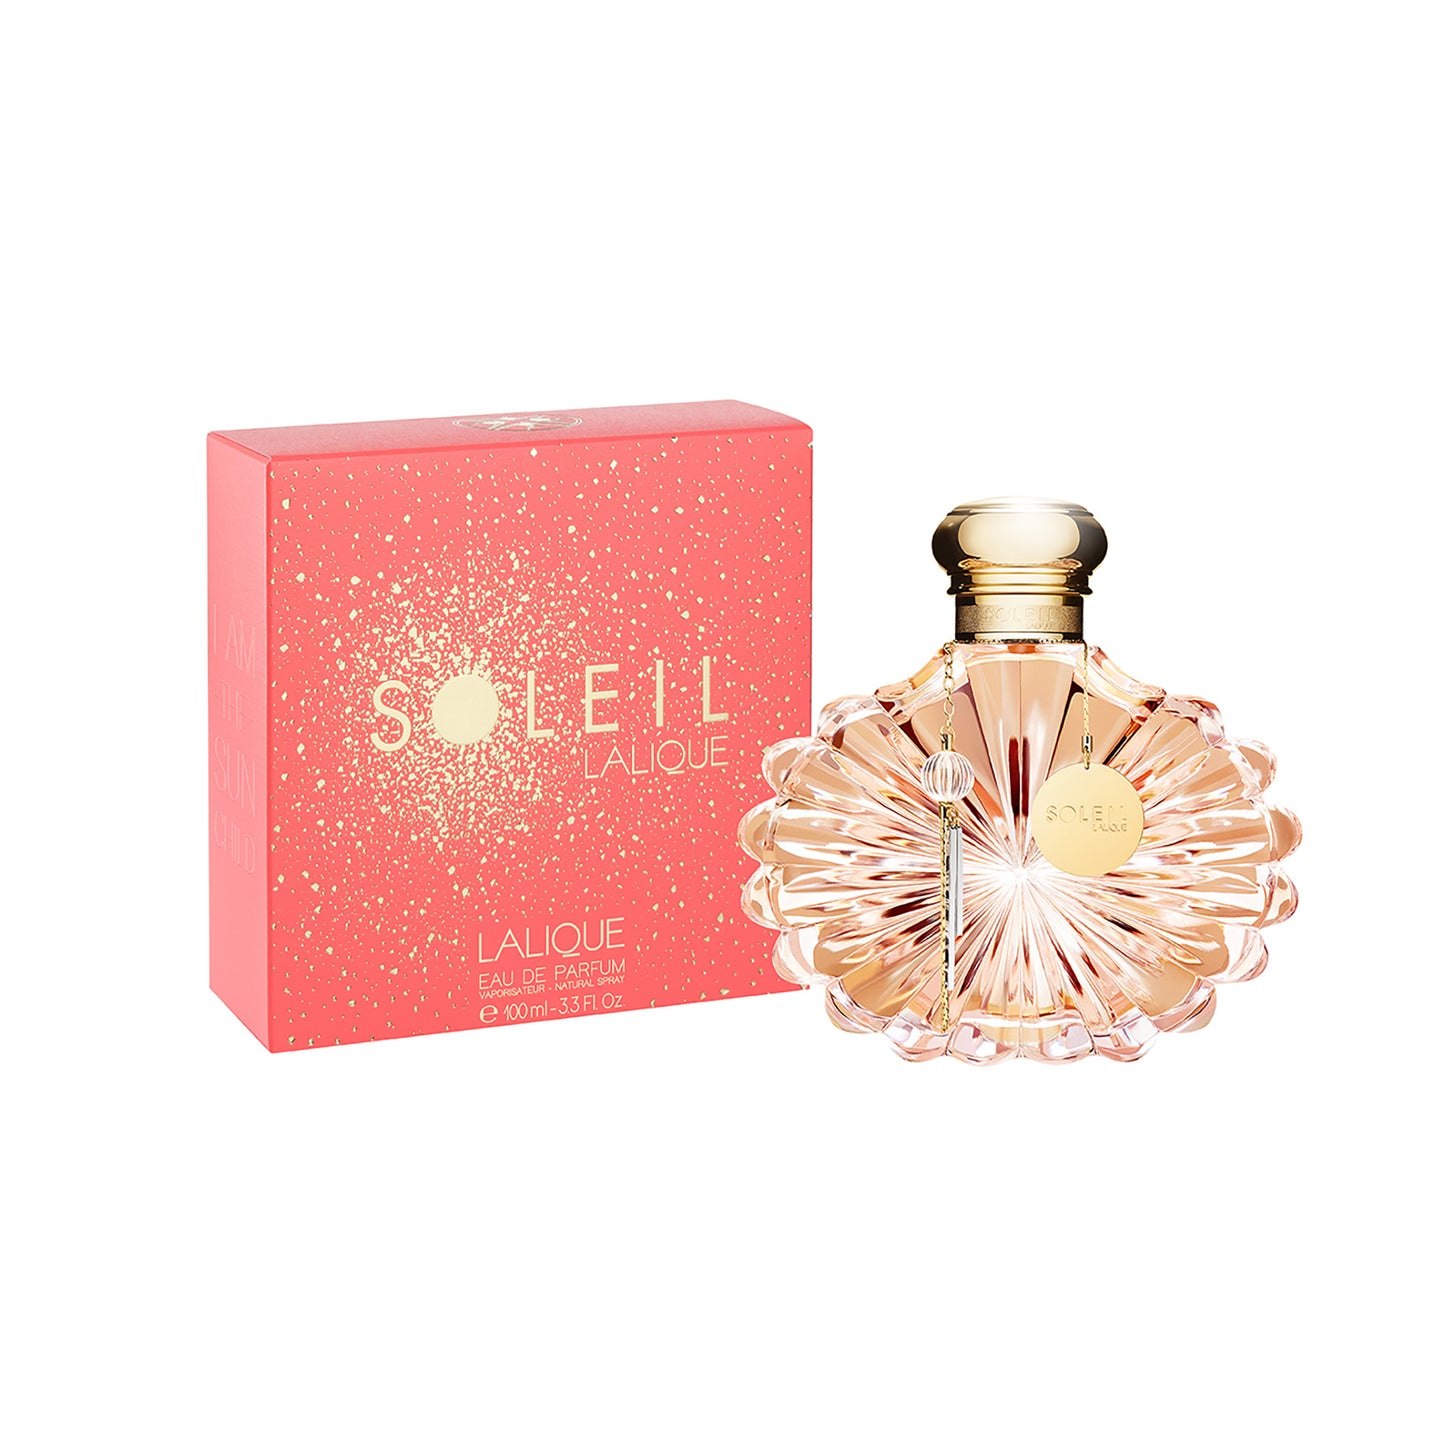 Soleil Lalique 3.4oz Eau de Parfum